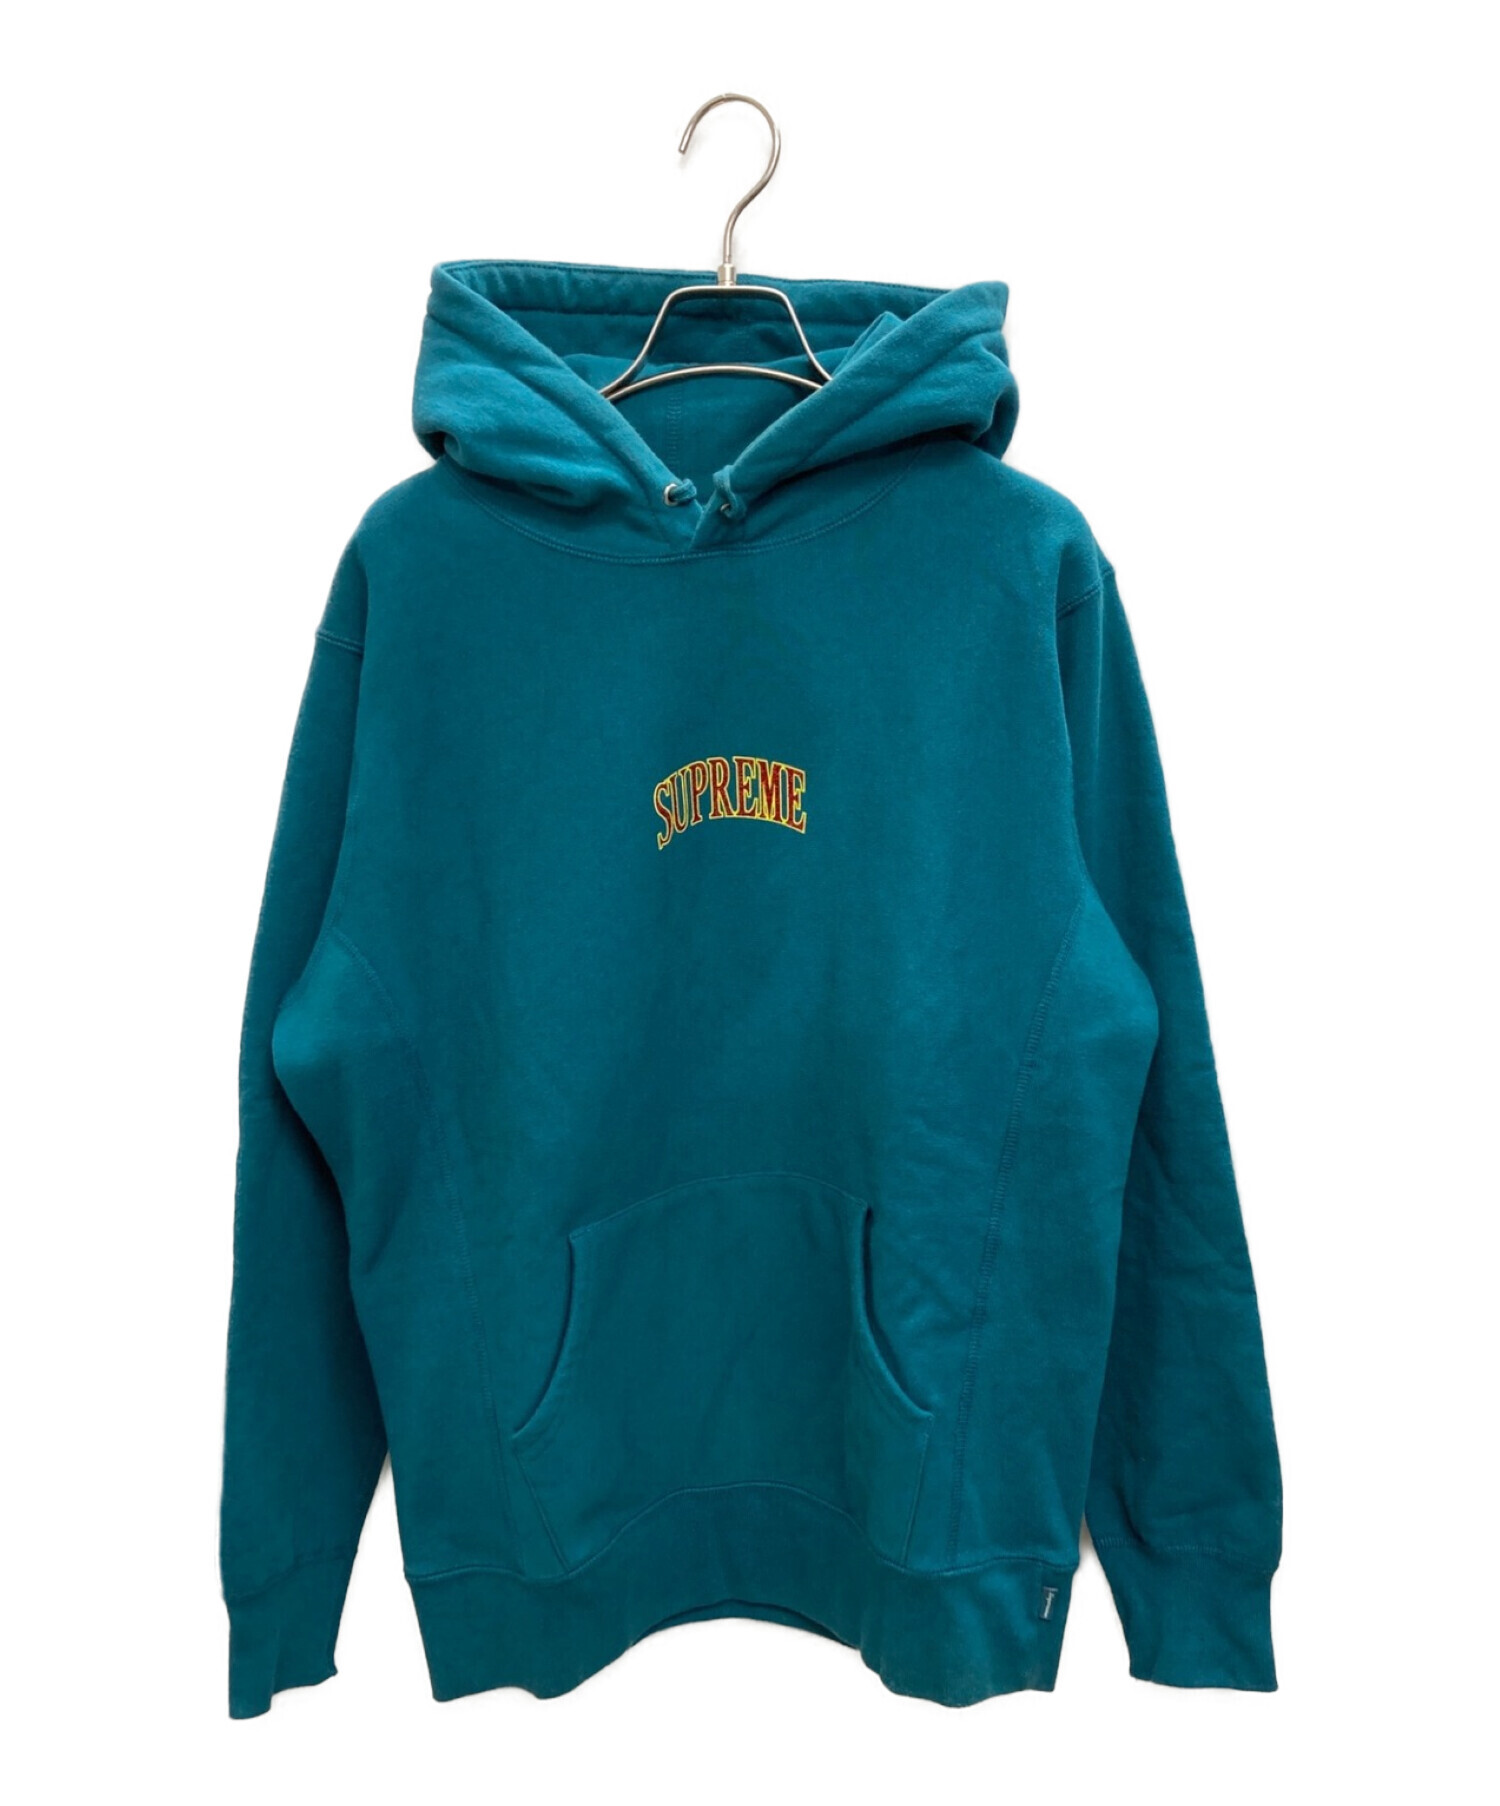 4月中旬に出た新しい商品ですSupreme Glitter Arc Hooded Sweatshirt